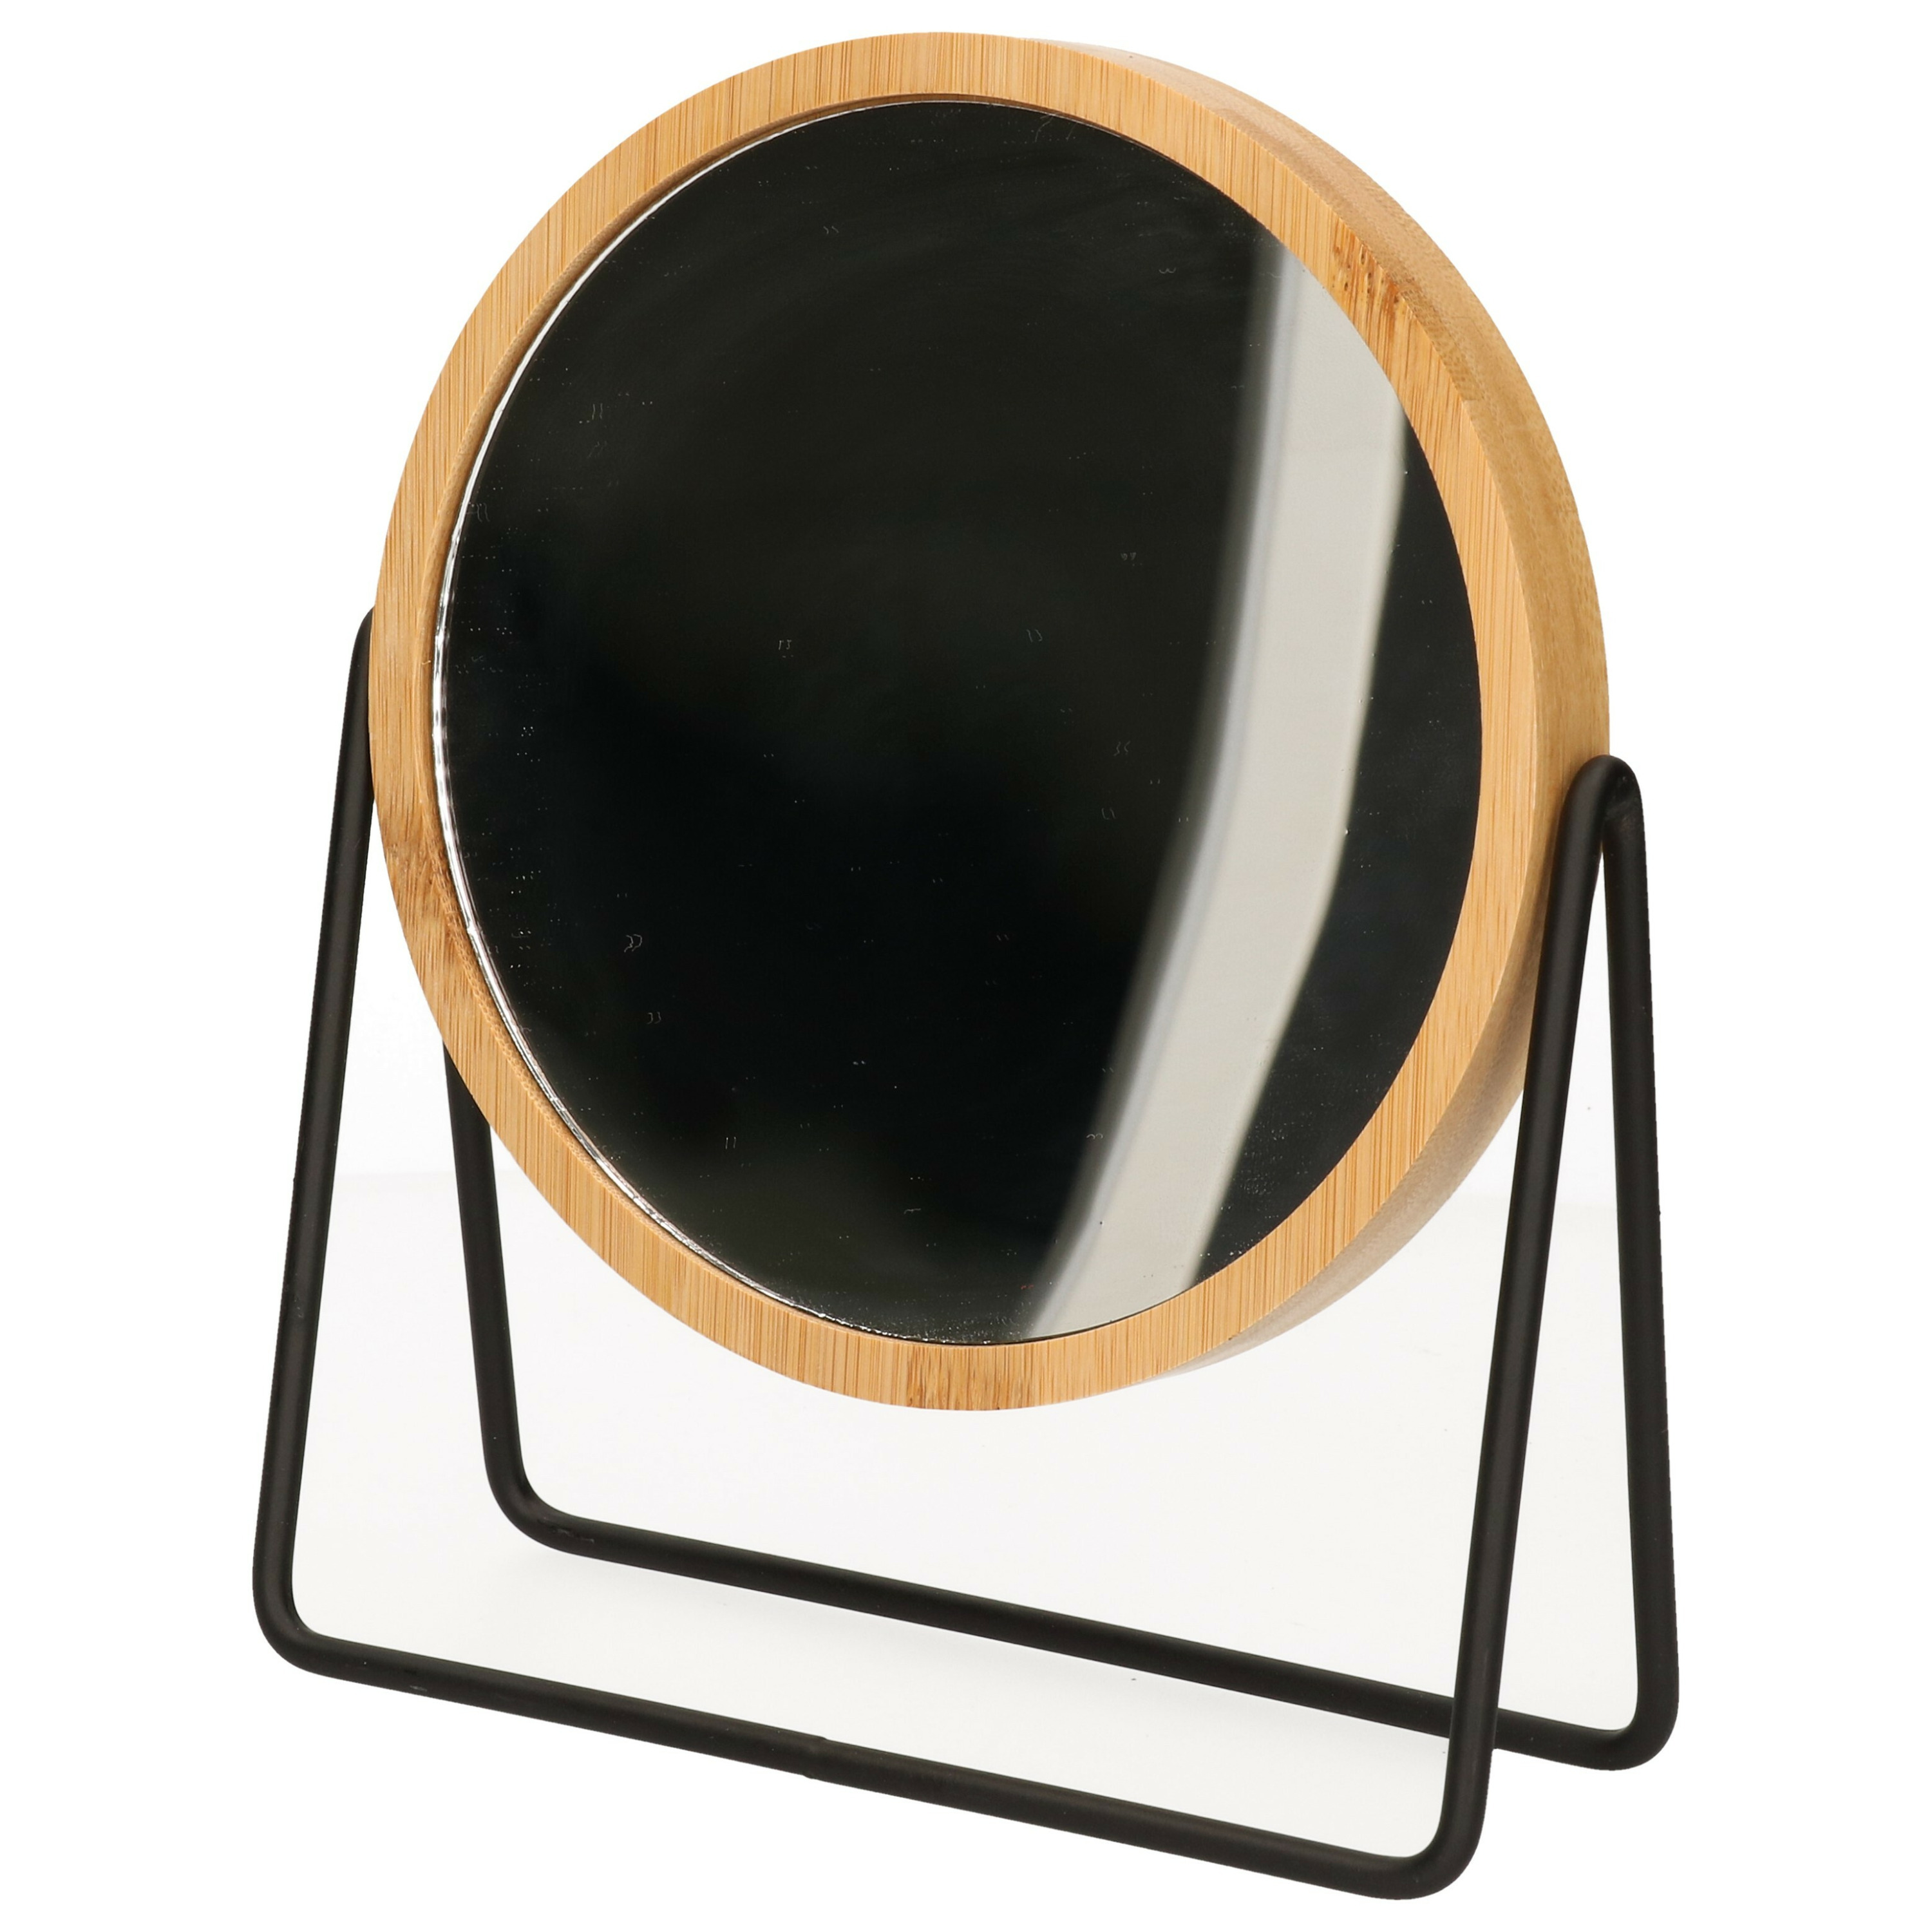 5five Make-up spiegel - 3x zoom - bamboe/hout - 17 x 20 cm - lichtbruin/zwart - dubbelzijdig -